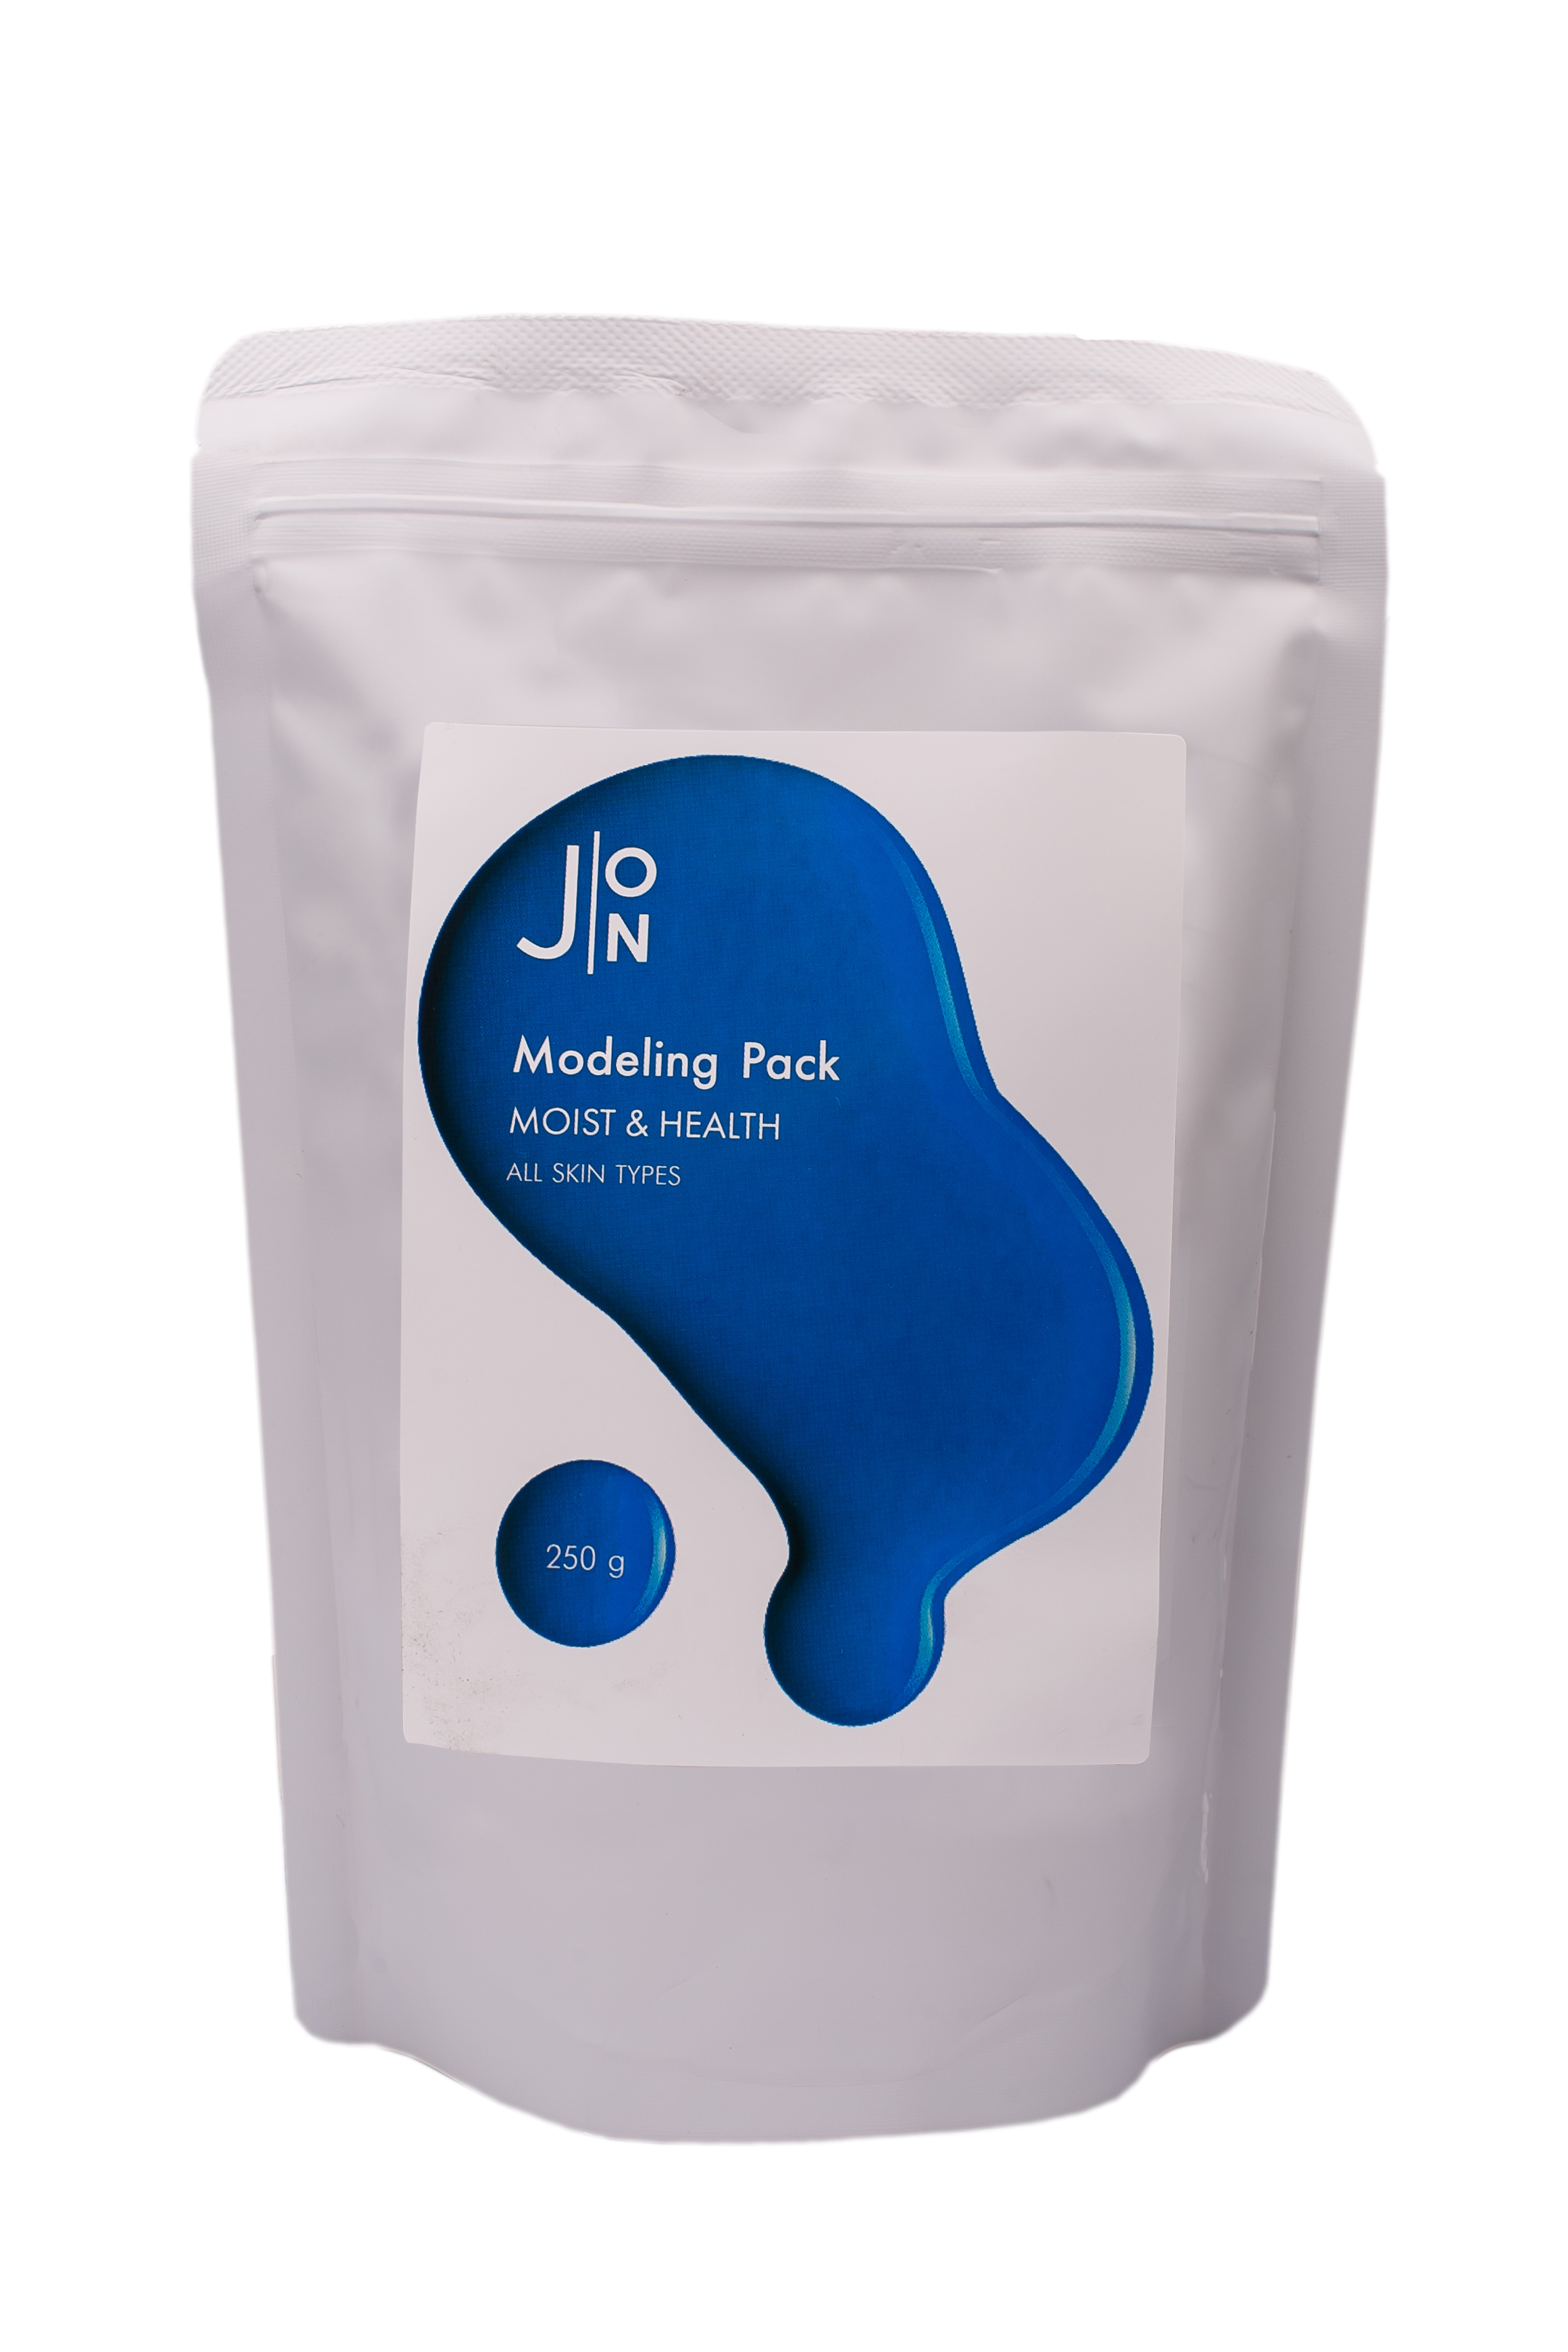 J:ON Moist & Health Modeling Pack Альгинатная маска для увлажнения и оздоровления кожи лица, 250г